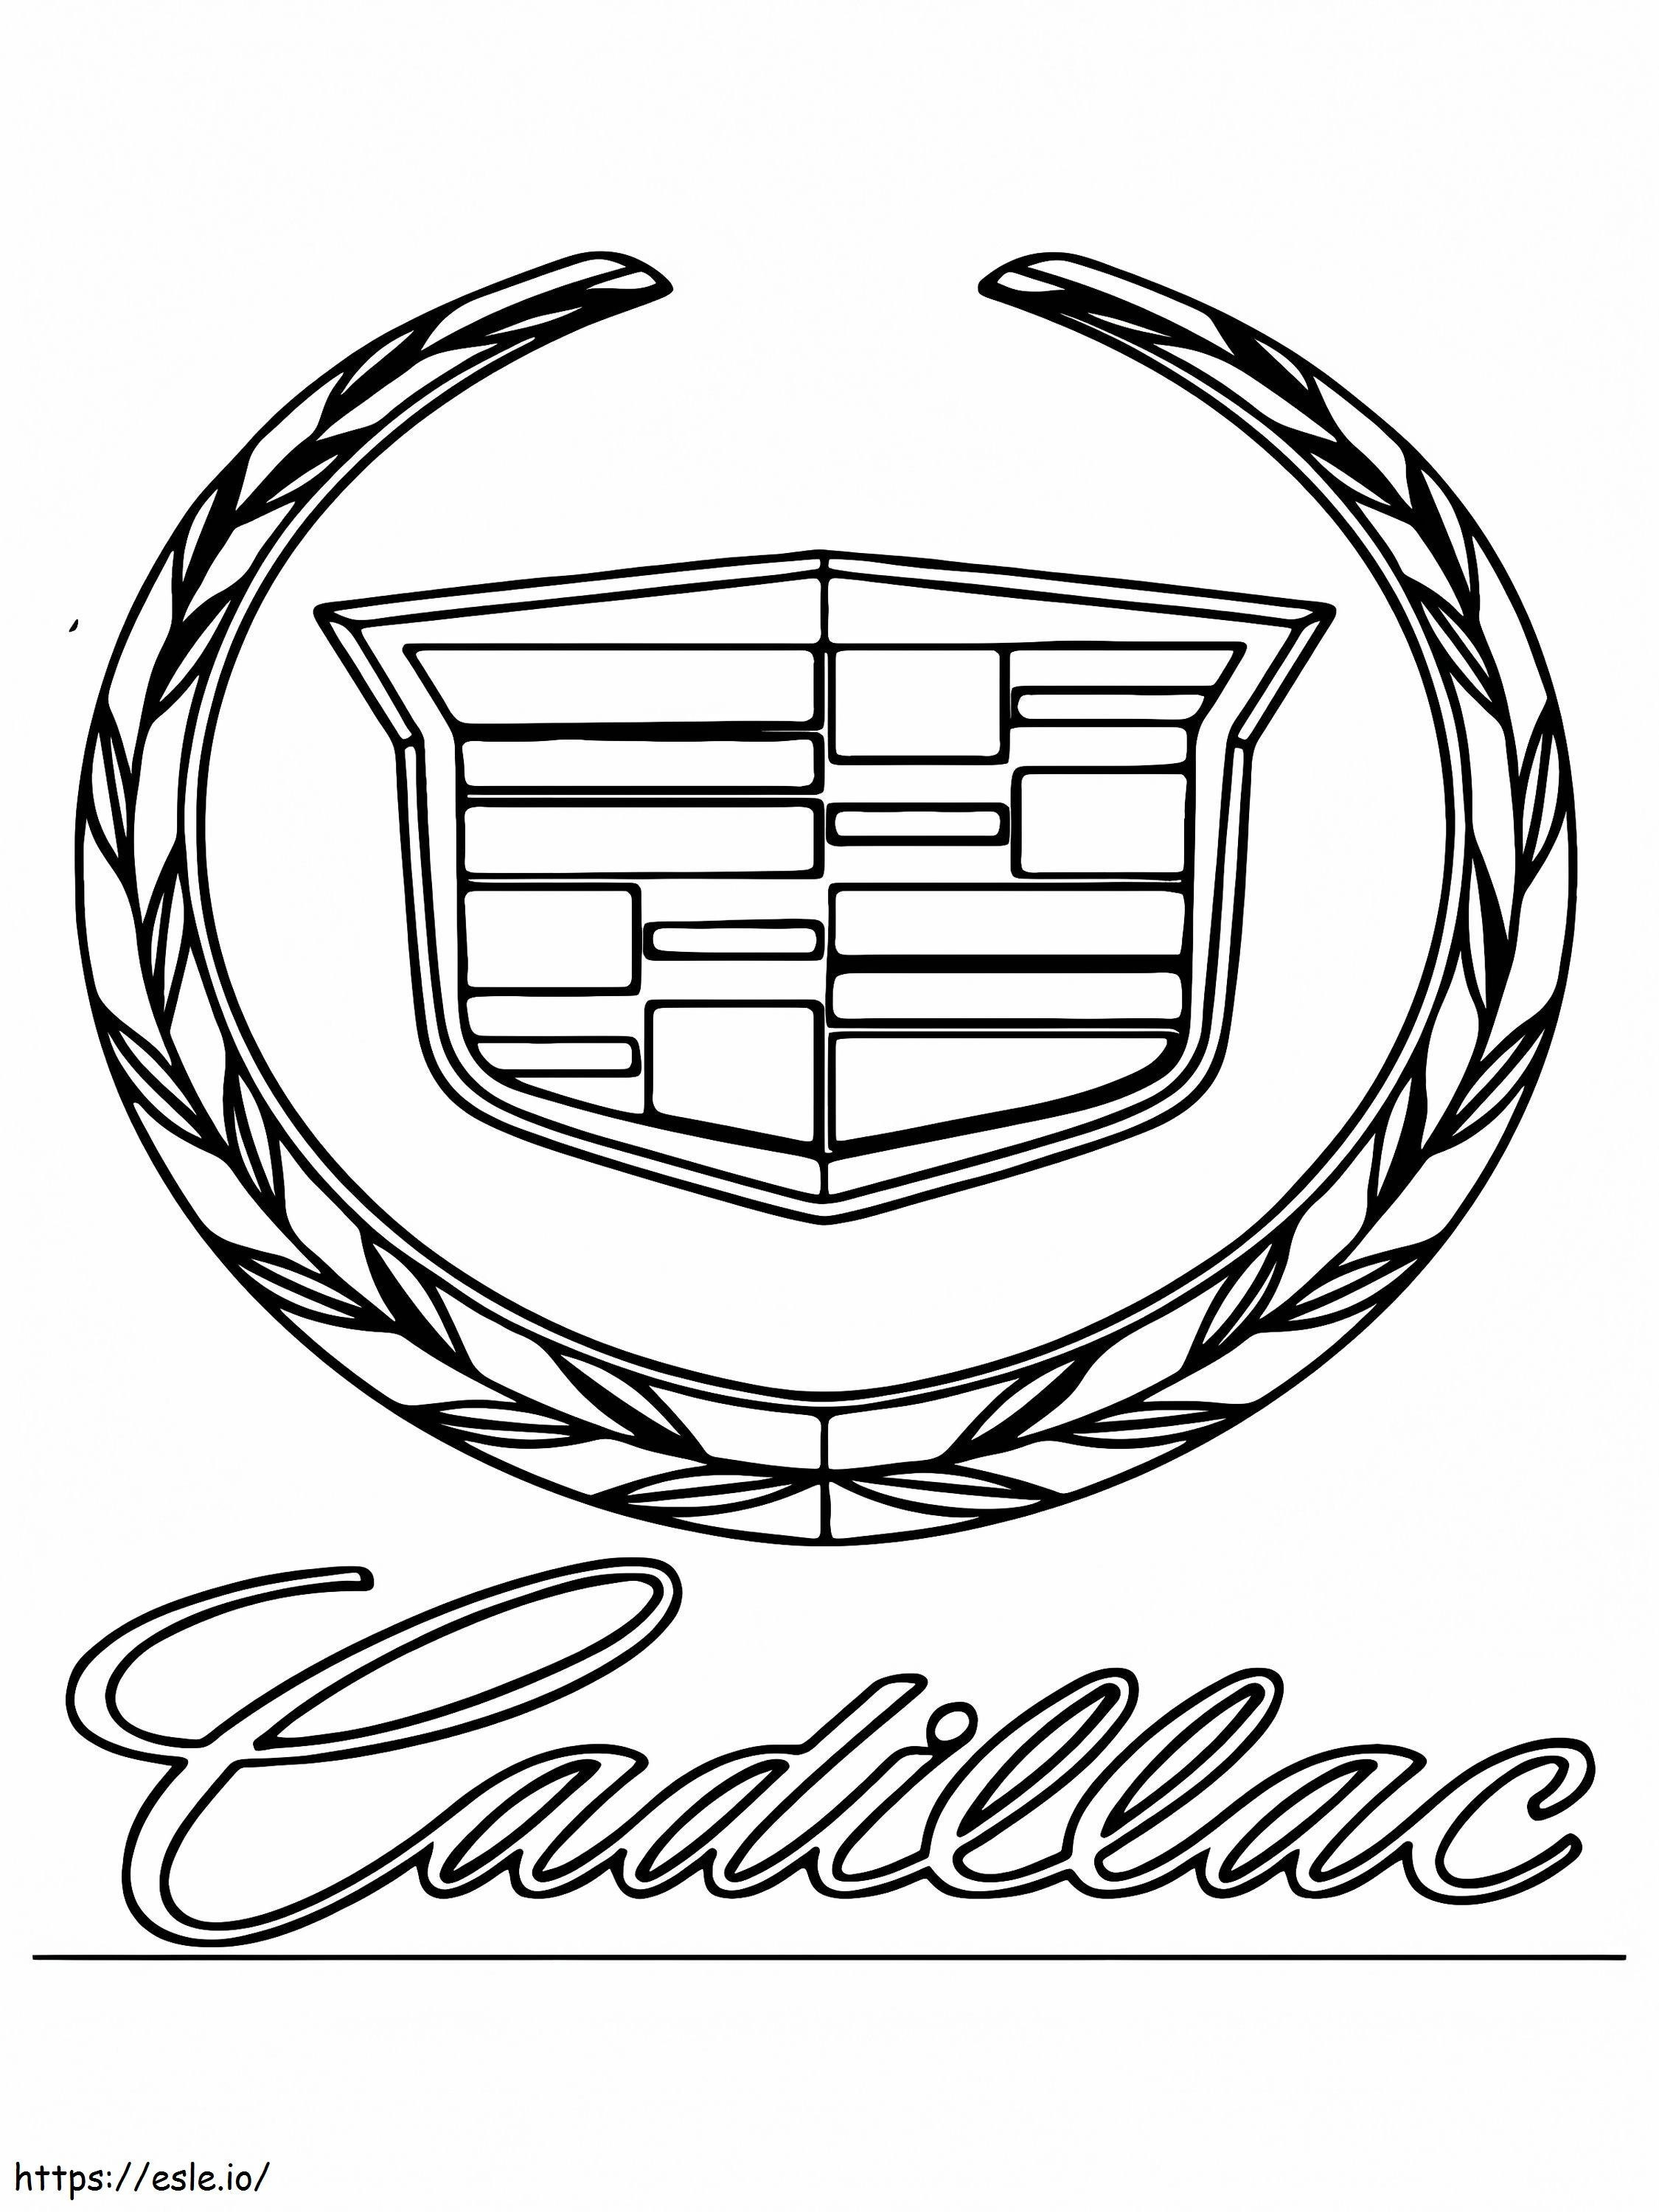 Cadillac autó logó kifestő